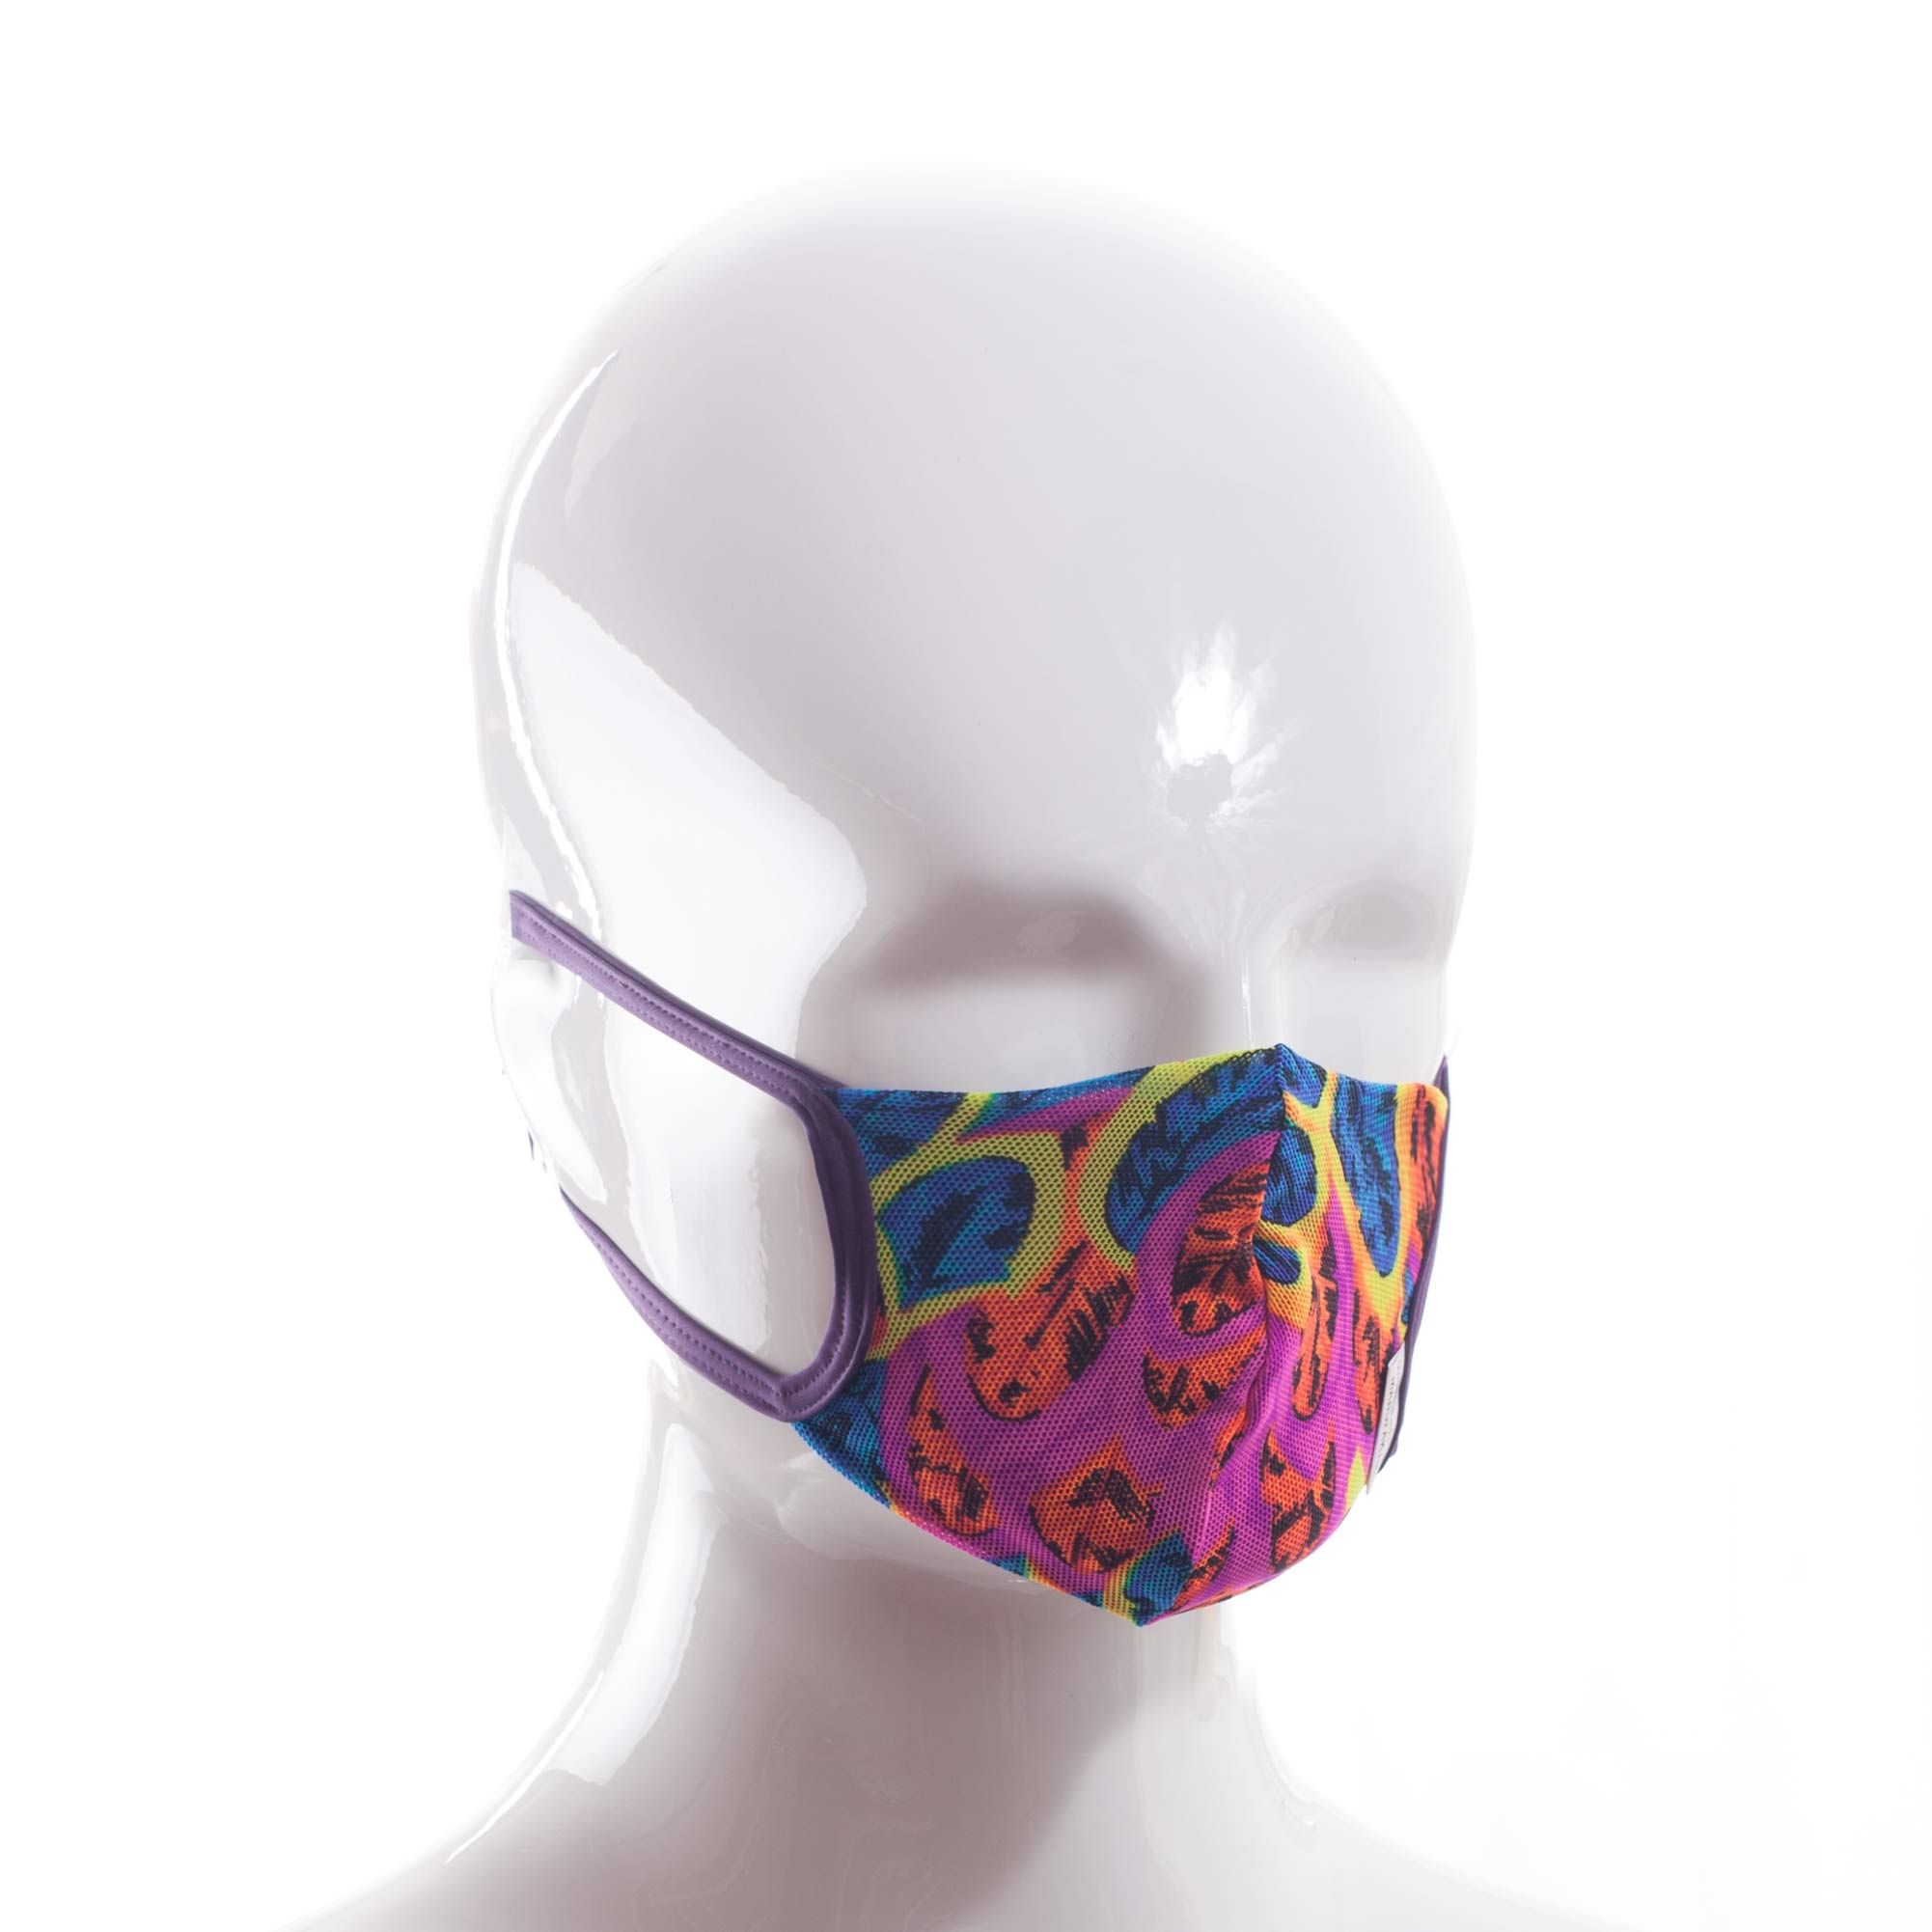 Die Baumwoll-Polyester Mund-Nasen Maske BWPM4.1KidsNeonfeder von der Wonneberger Manufaktur ist eine textile Behelfsmaske, kein zertifizierter Mundschutz.

Sie schützt nur bedingt vor Ansteckung. Ihr eigentlicher Zweck ist es, den Atem des Trägers zu filtern und dadurch seine Umgebung zu schützen.
Daher muss die…